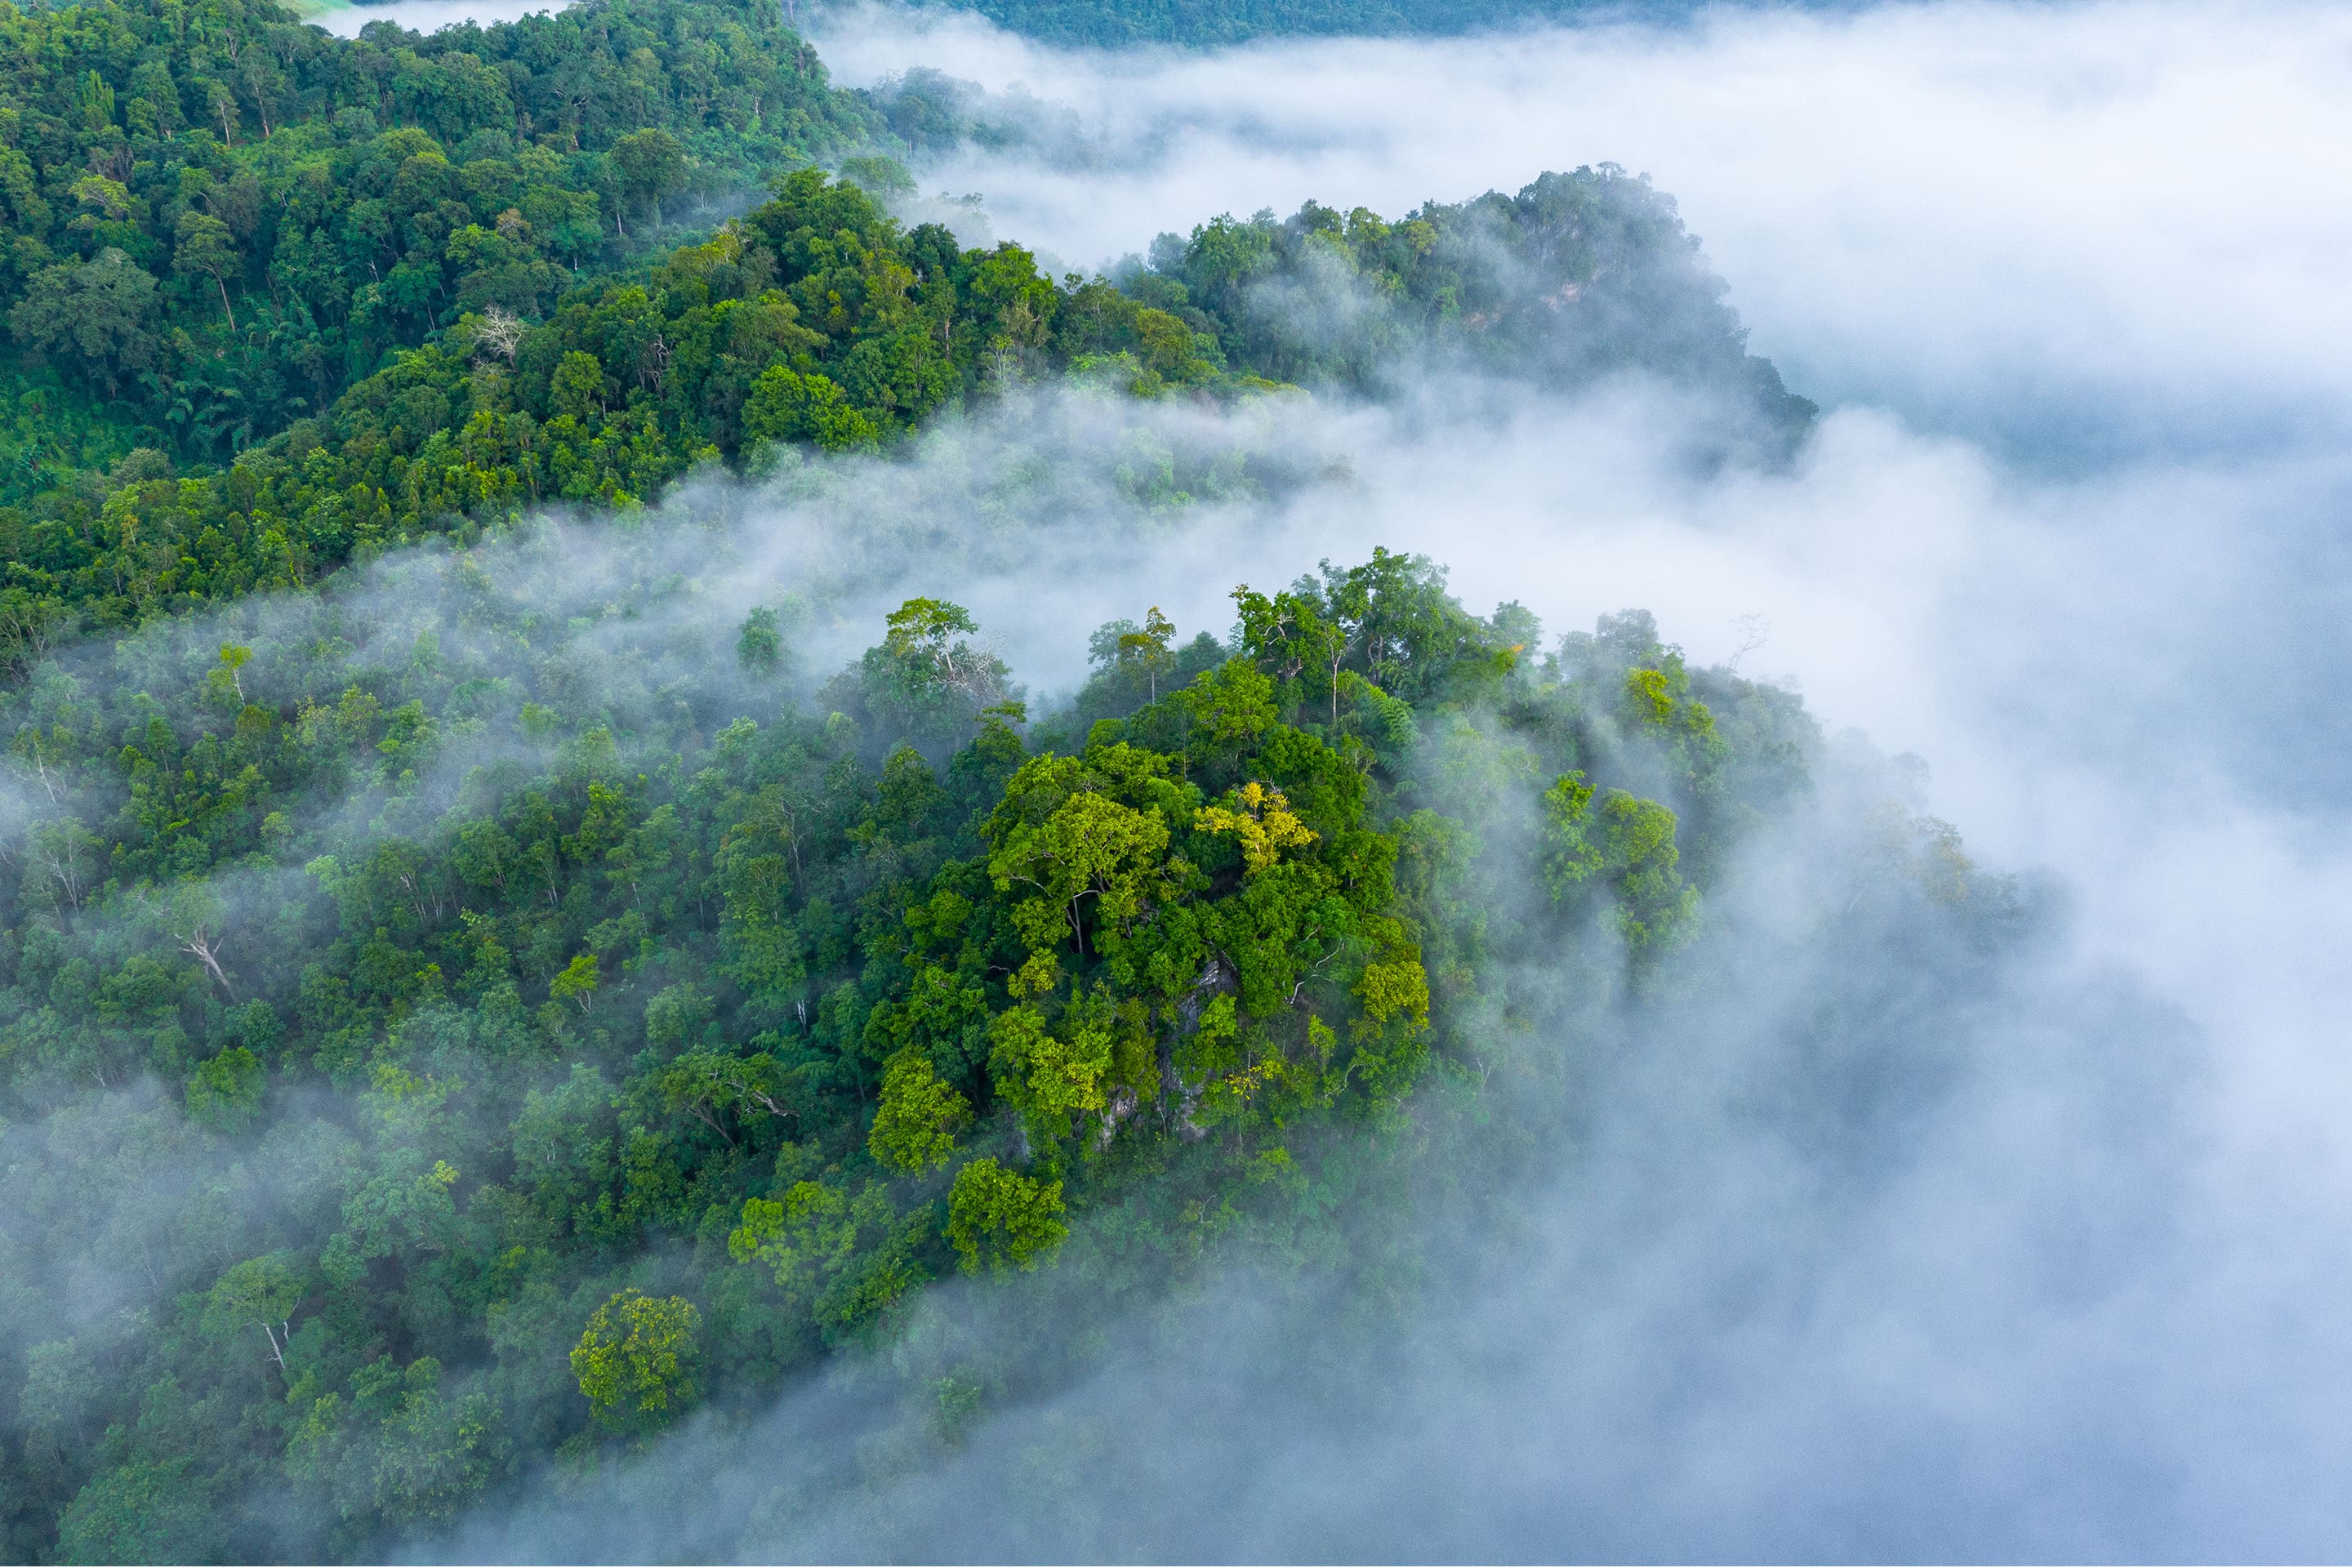 Vue aérienne d'une forêt verdoyante enveloppée de brume blanche.